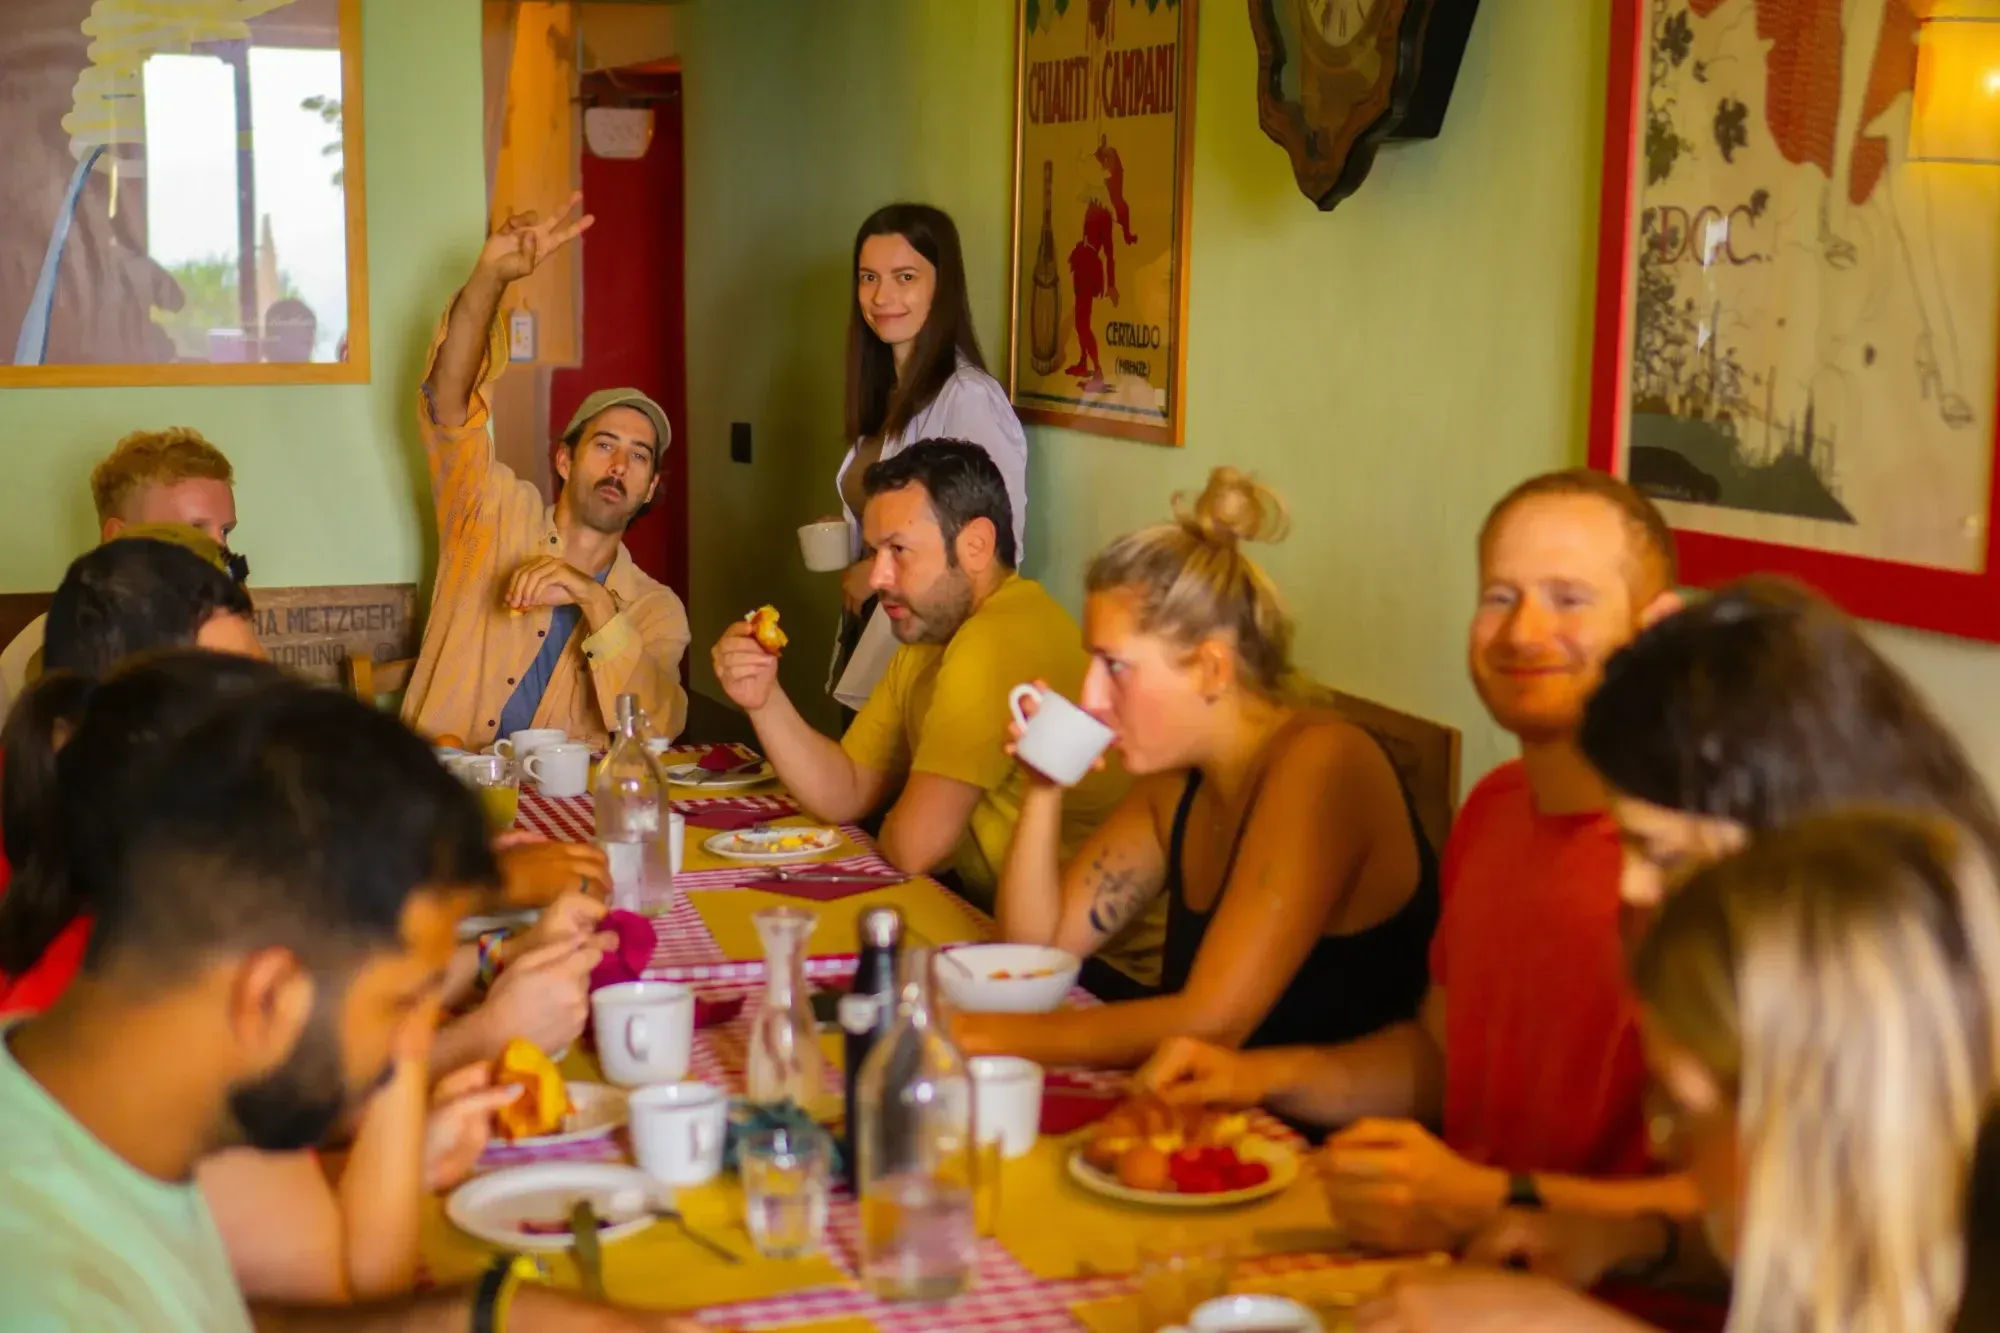 Zehn Menschen sitzen am Frühstückstisch, essen und trinken. Ein Mann schaut in die Kamera und zeigt ein Peace-Zeichen, die Frau rechts neben ihm hält eine Tasse und lächelt. 